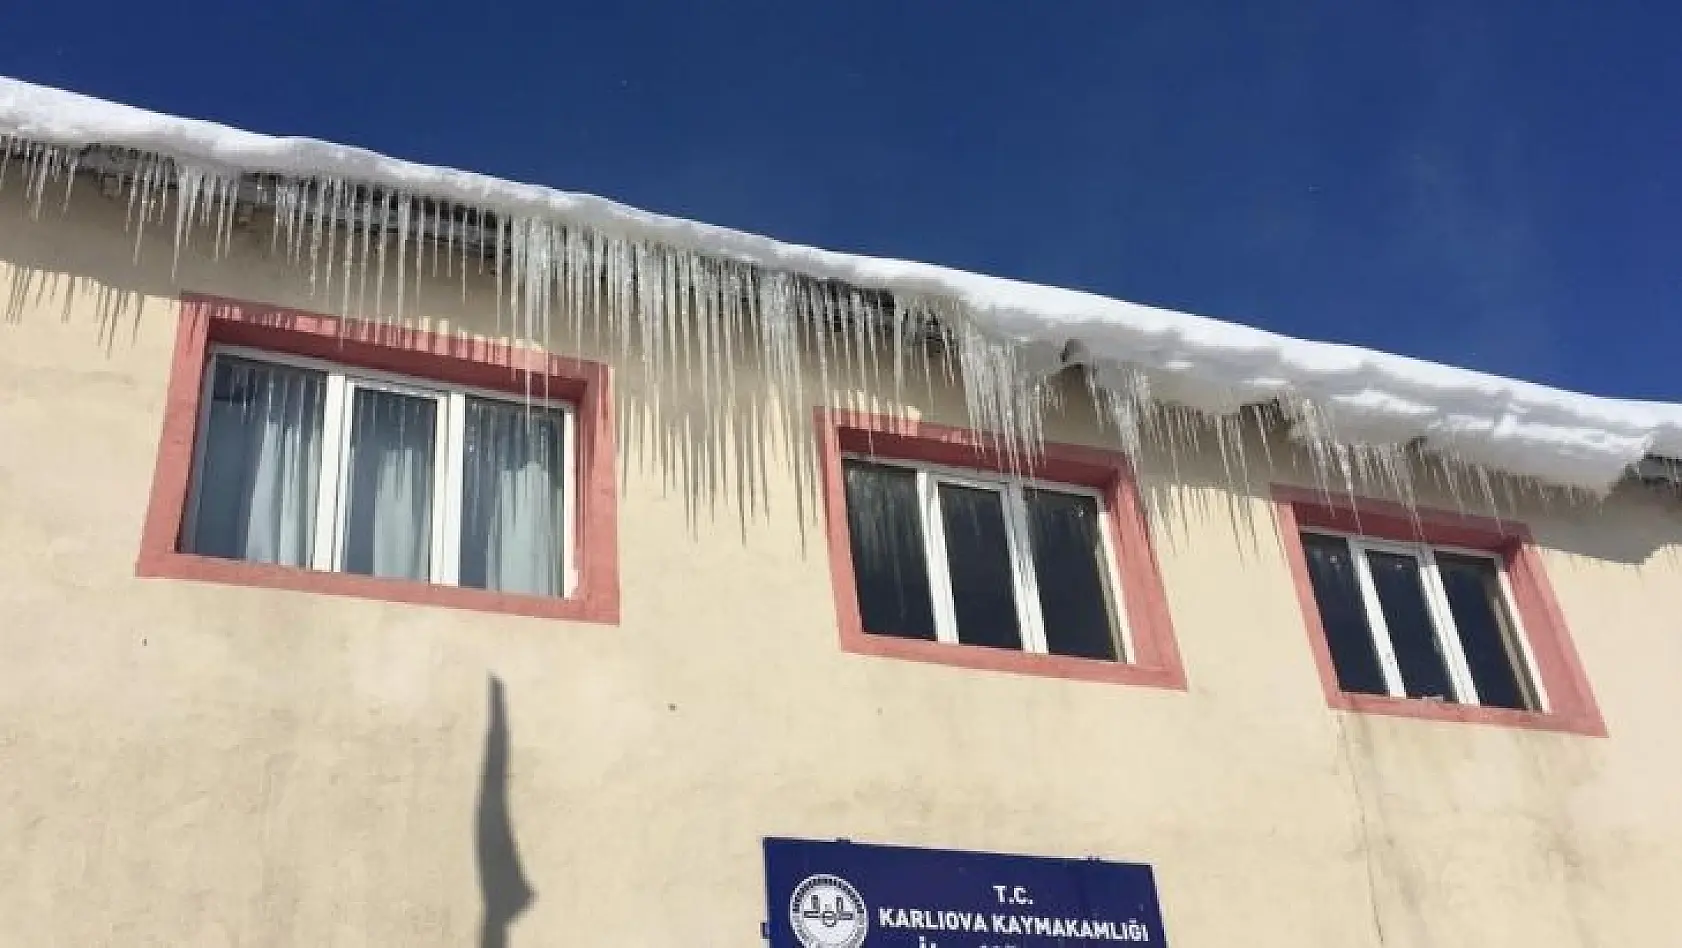 Karlıova'da kar yerini soğuk havaya bıraktı, eksi 21'i gördü